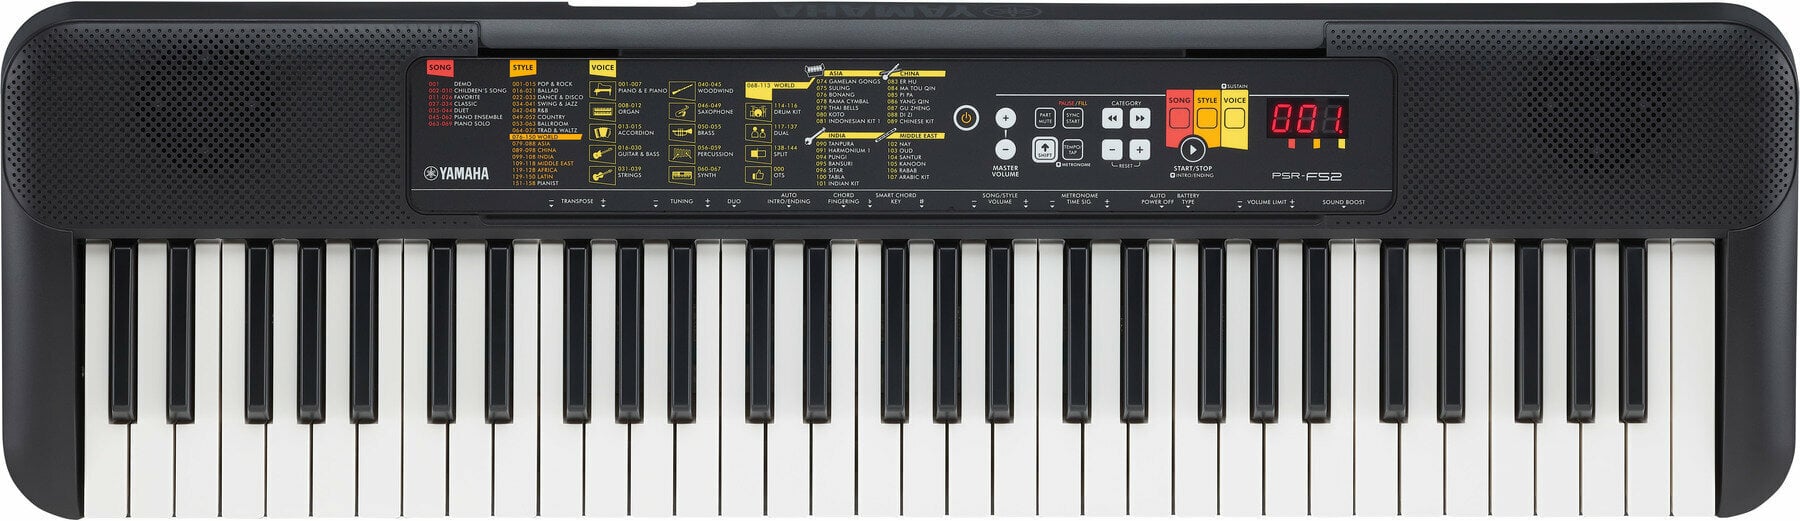 Keyboard without Touch Response Yamaha PSR-F52